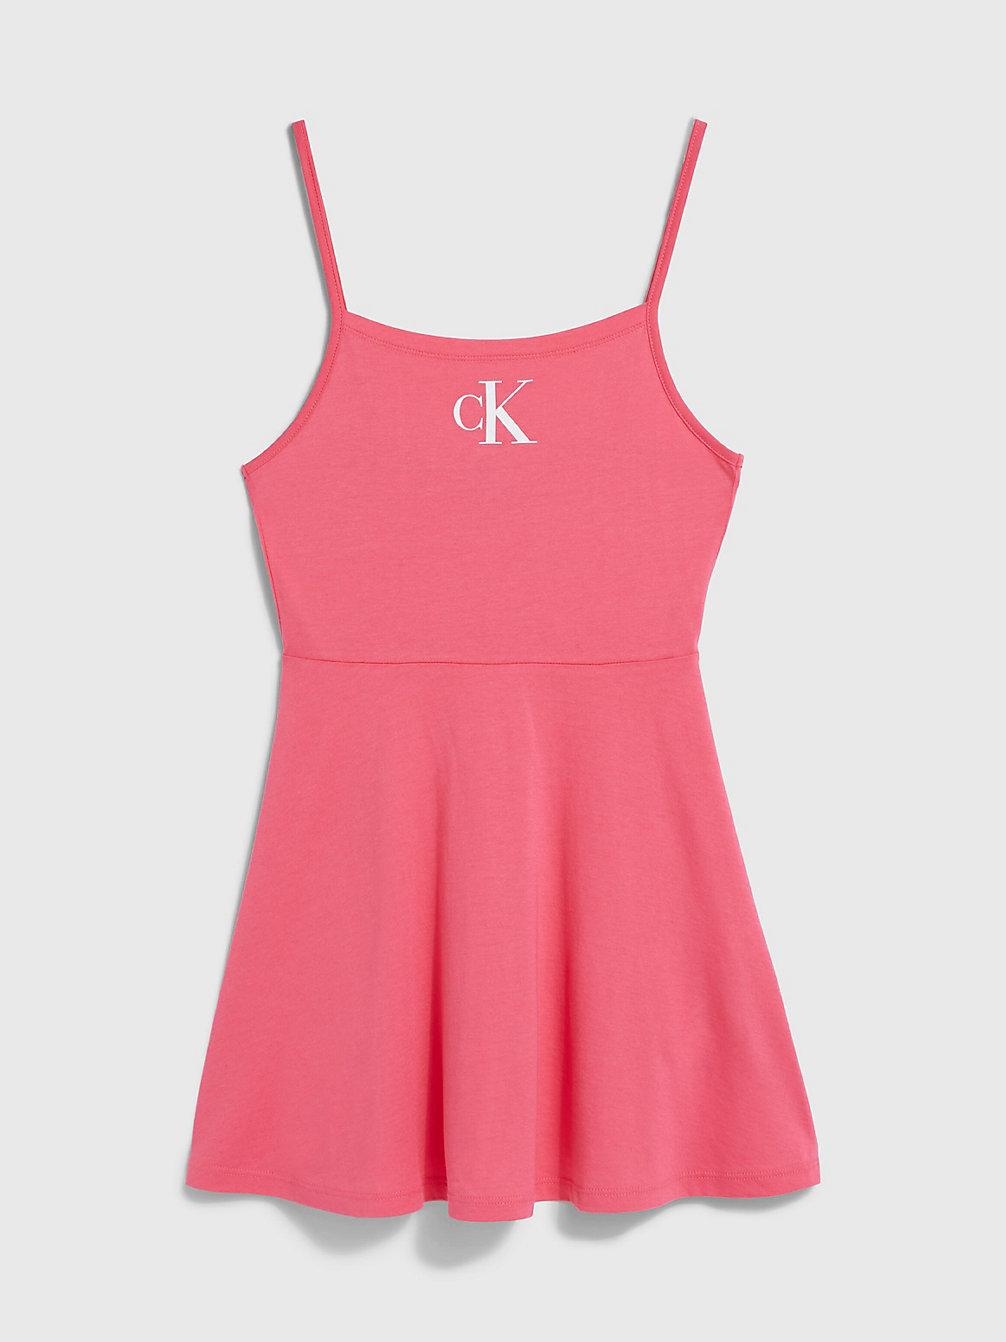 PINK FLASH Girls Beach Dress - CK Monogram undefined girls Calvin Klein